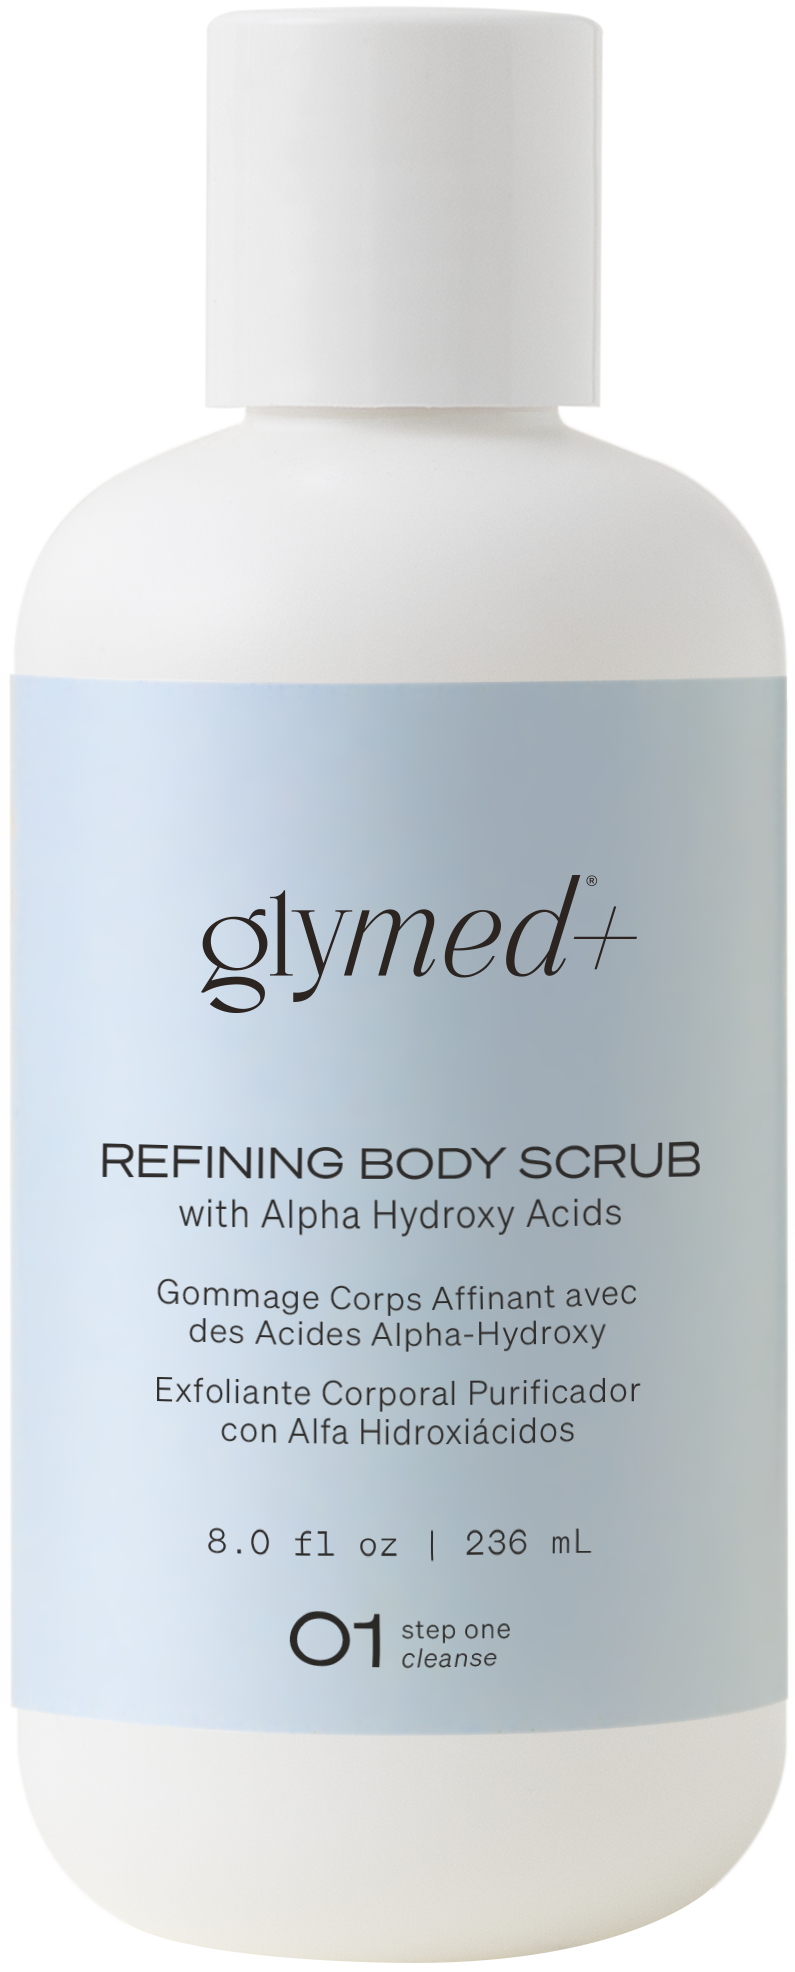 Refining Hand & Body Scrub with Alpha Hydroxy Acids